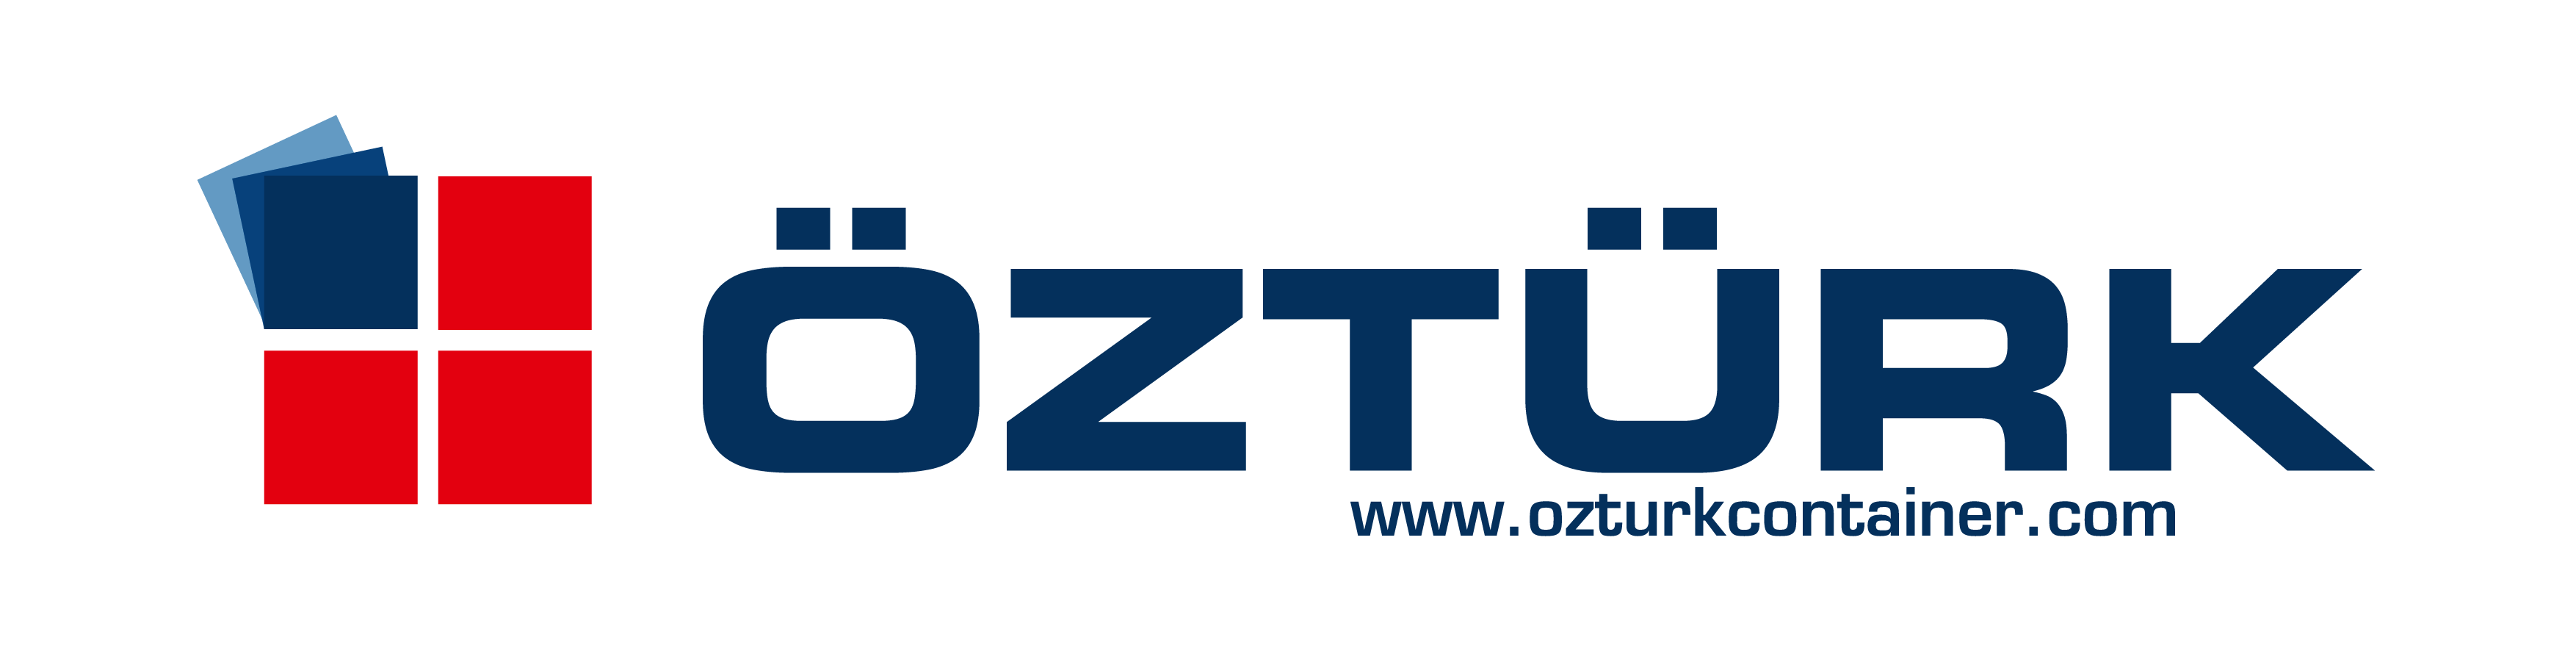 Ozturk - Army Technology